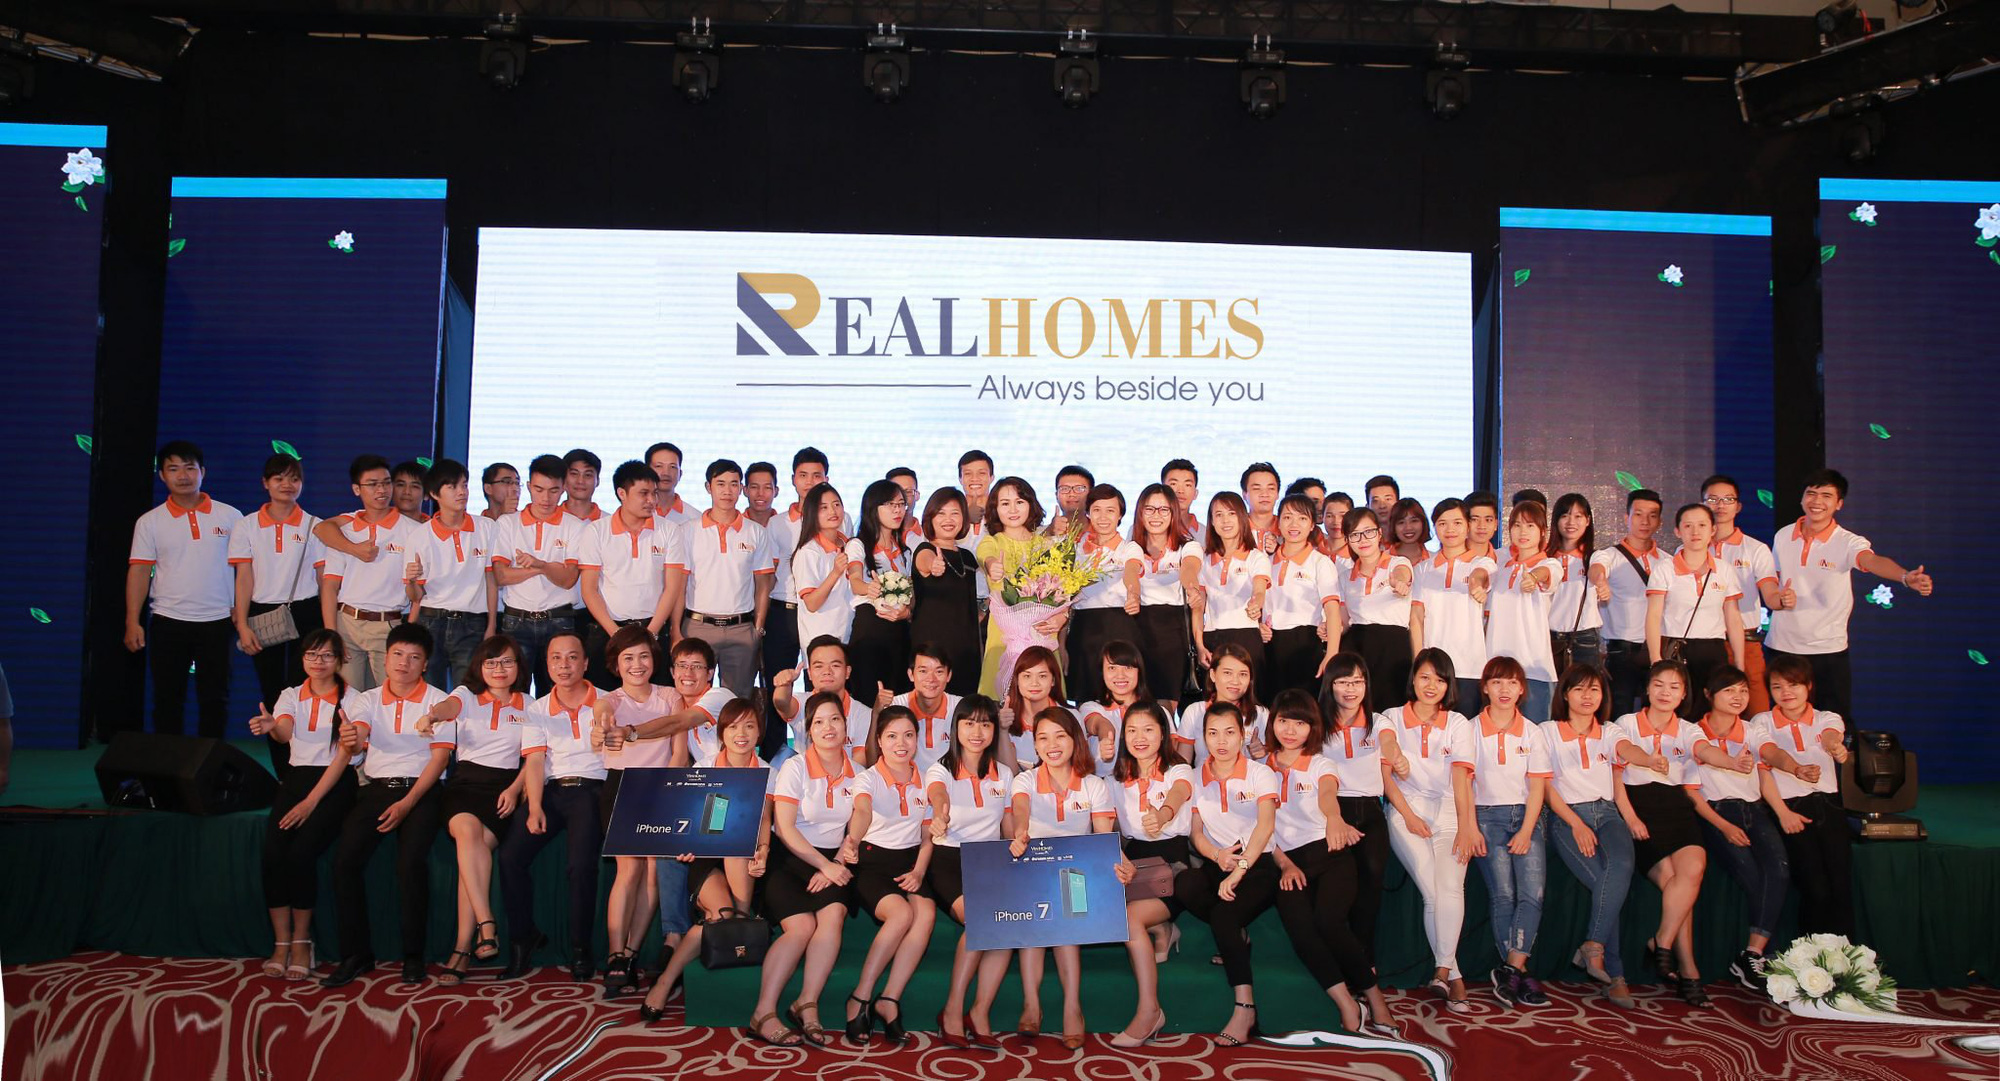 Realhomes - Tổng đại lý phân phối độc quyền miền Bắc dự án Vega City Nha Trang - Ảnh 1.